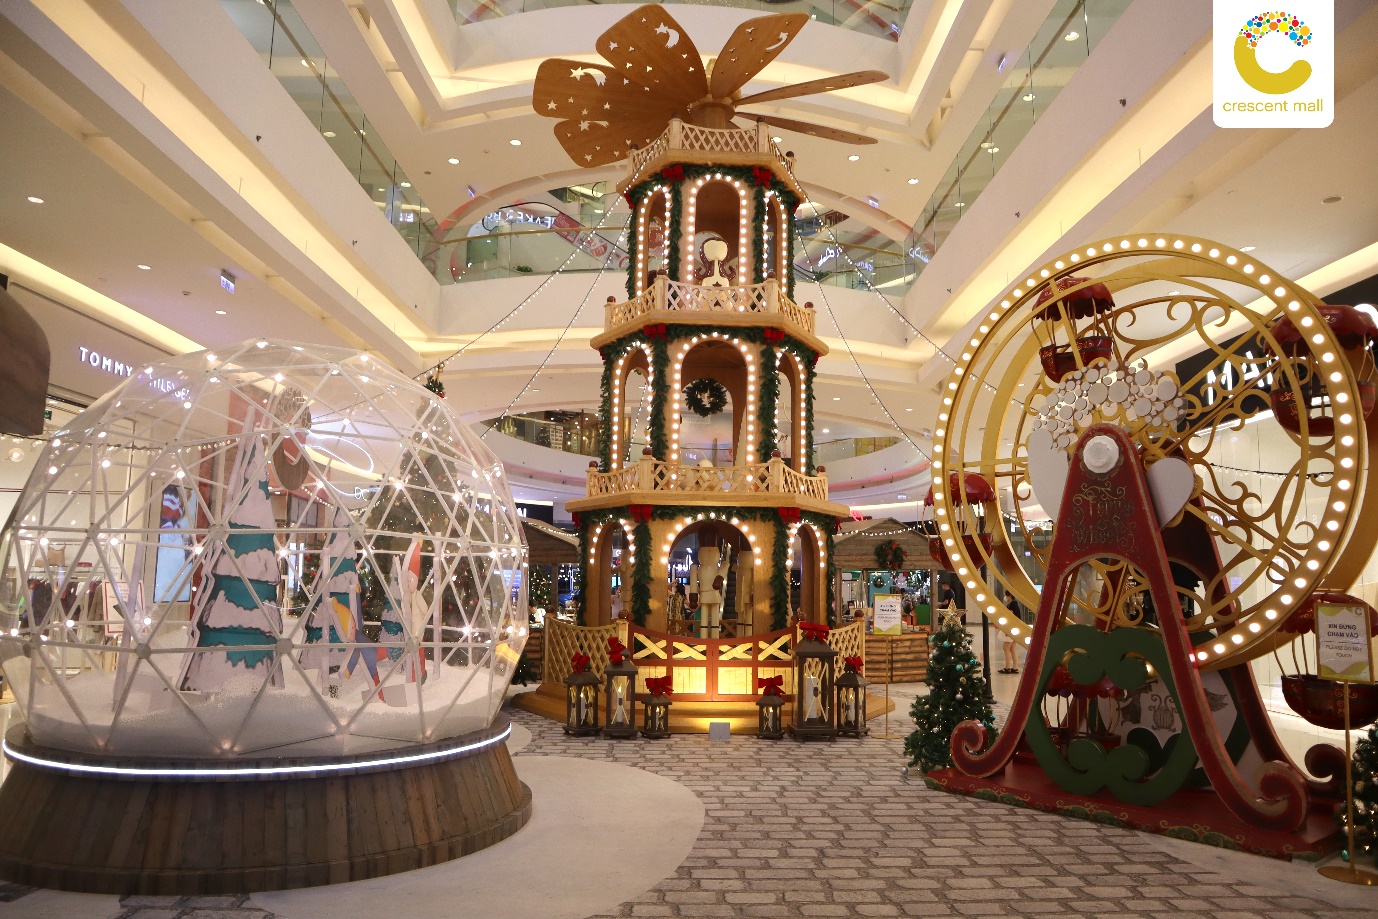 Lạc vào thế giới cổ tích châu Âu trong dịp Giáng sinh này tại Crescent Mall - Ảnh 1.